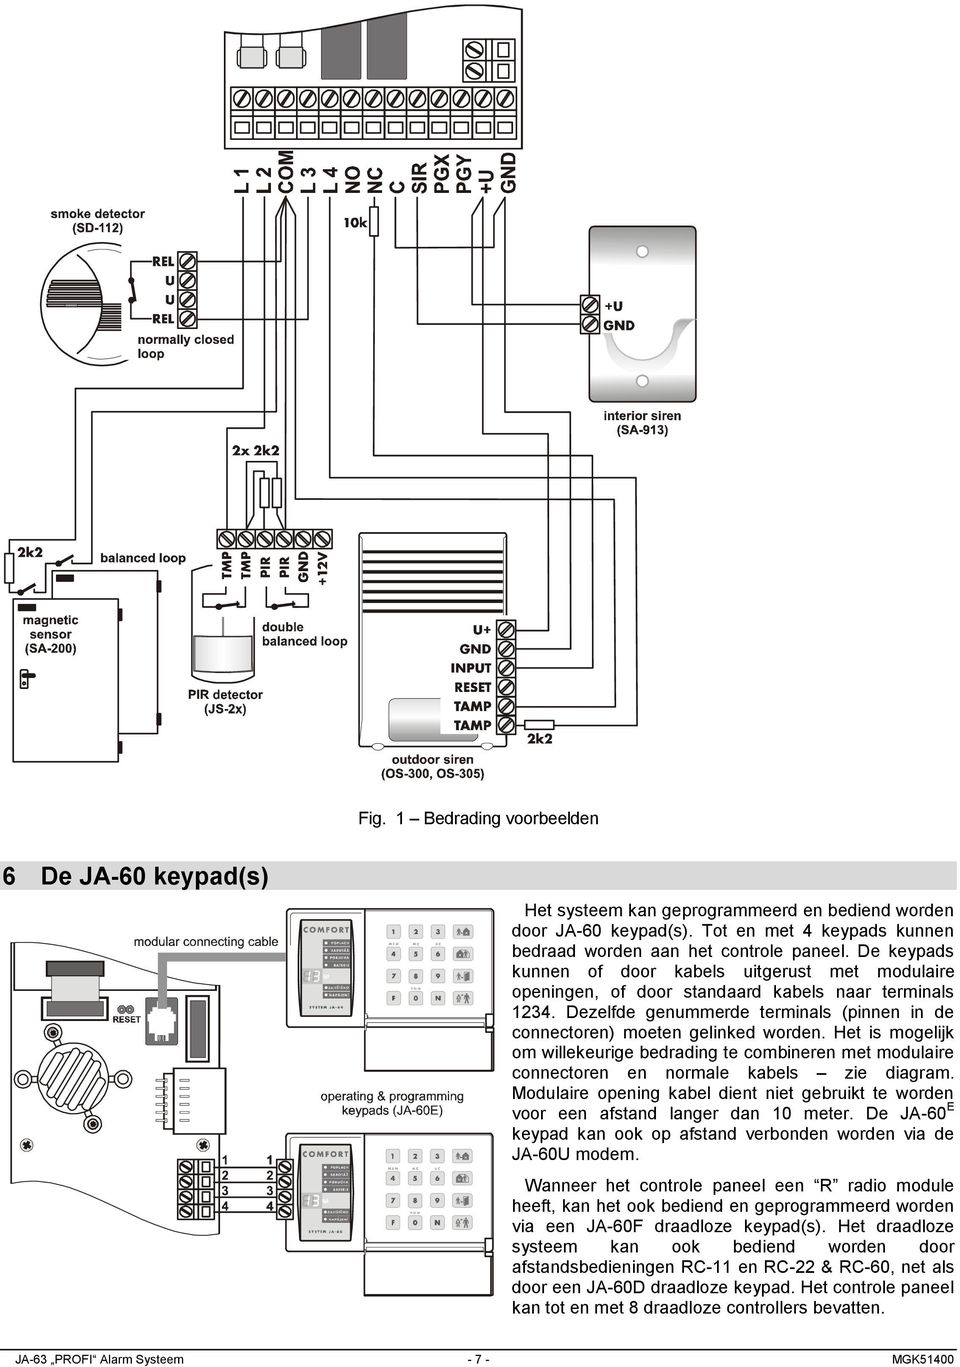 Het is mogelijk om willekeurige bedrading te combineren met modulaire connectoren en normale kabels zie diagram.